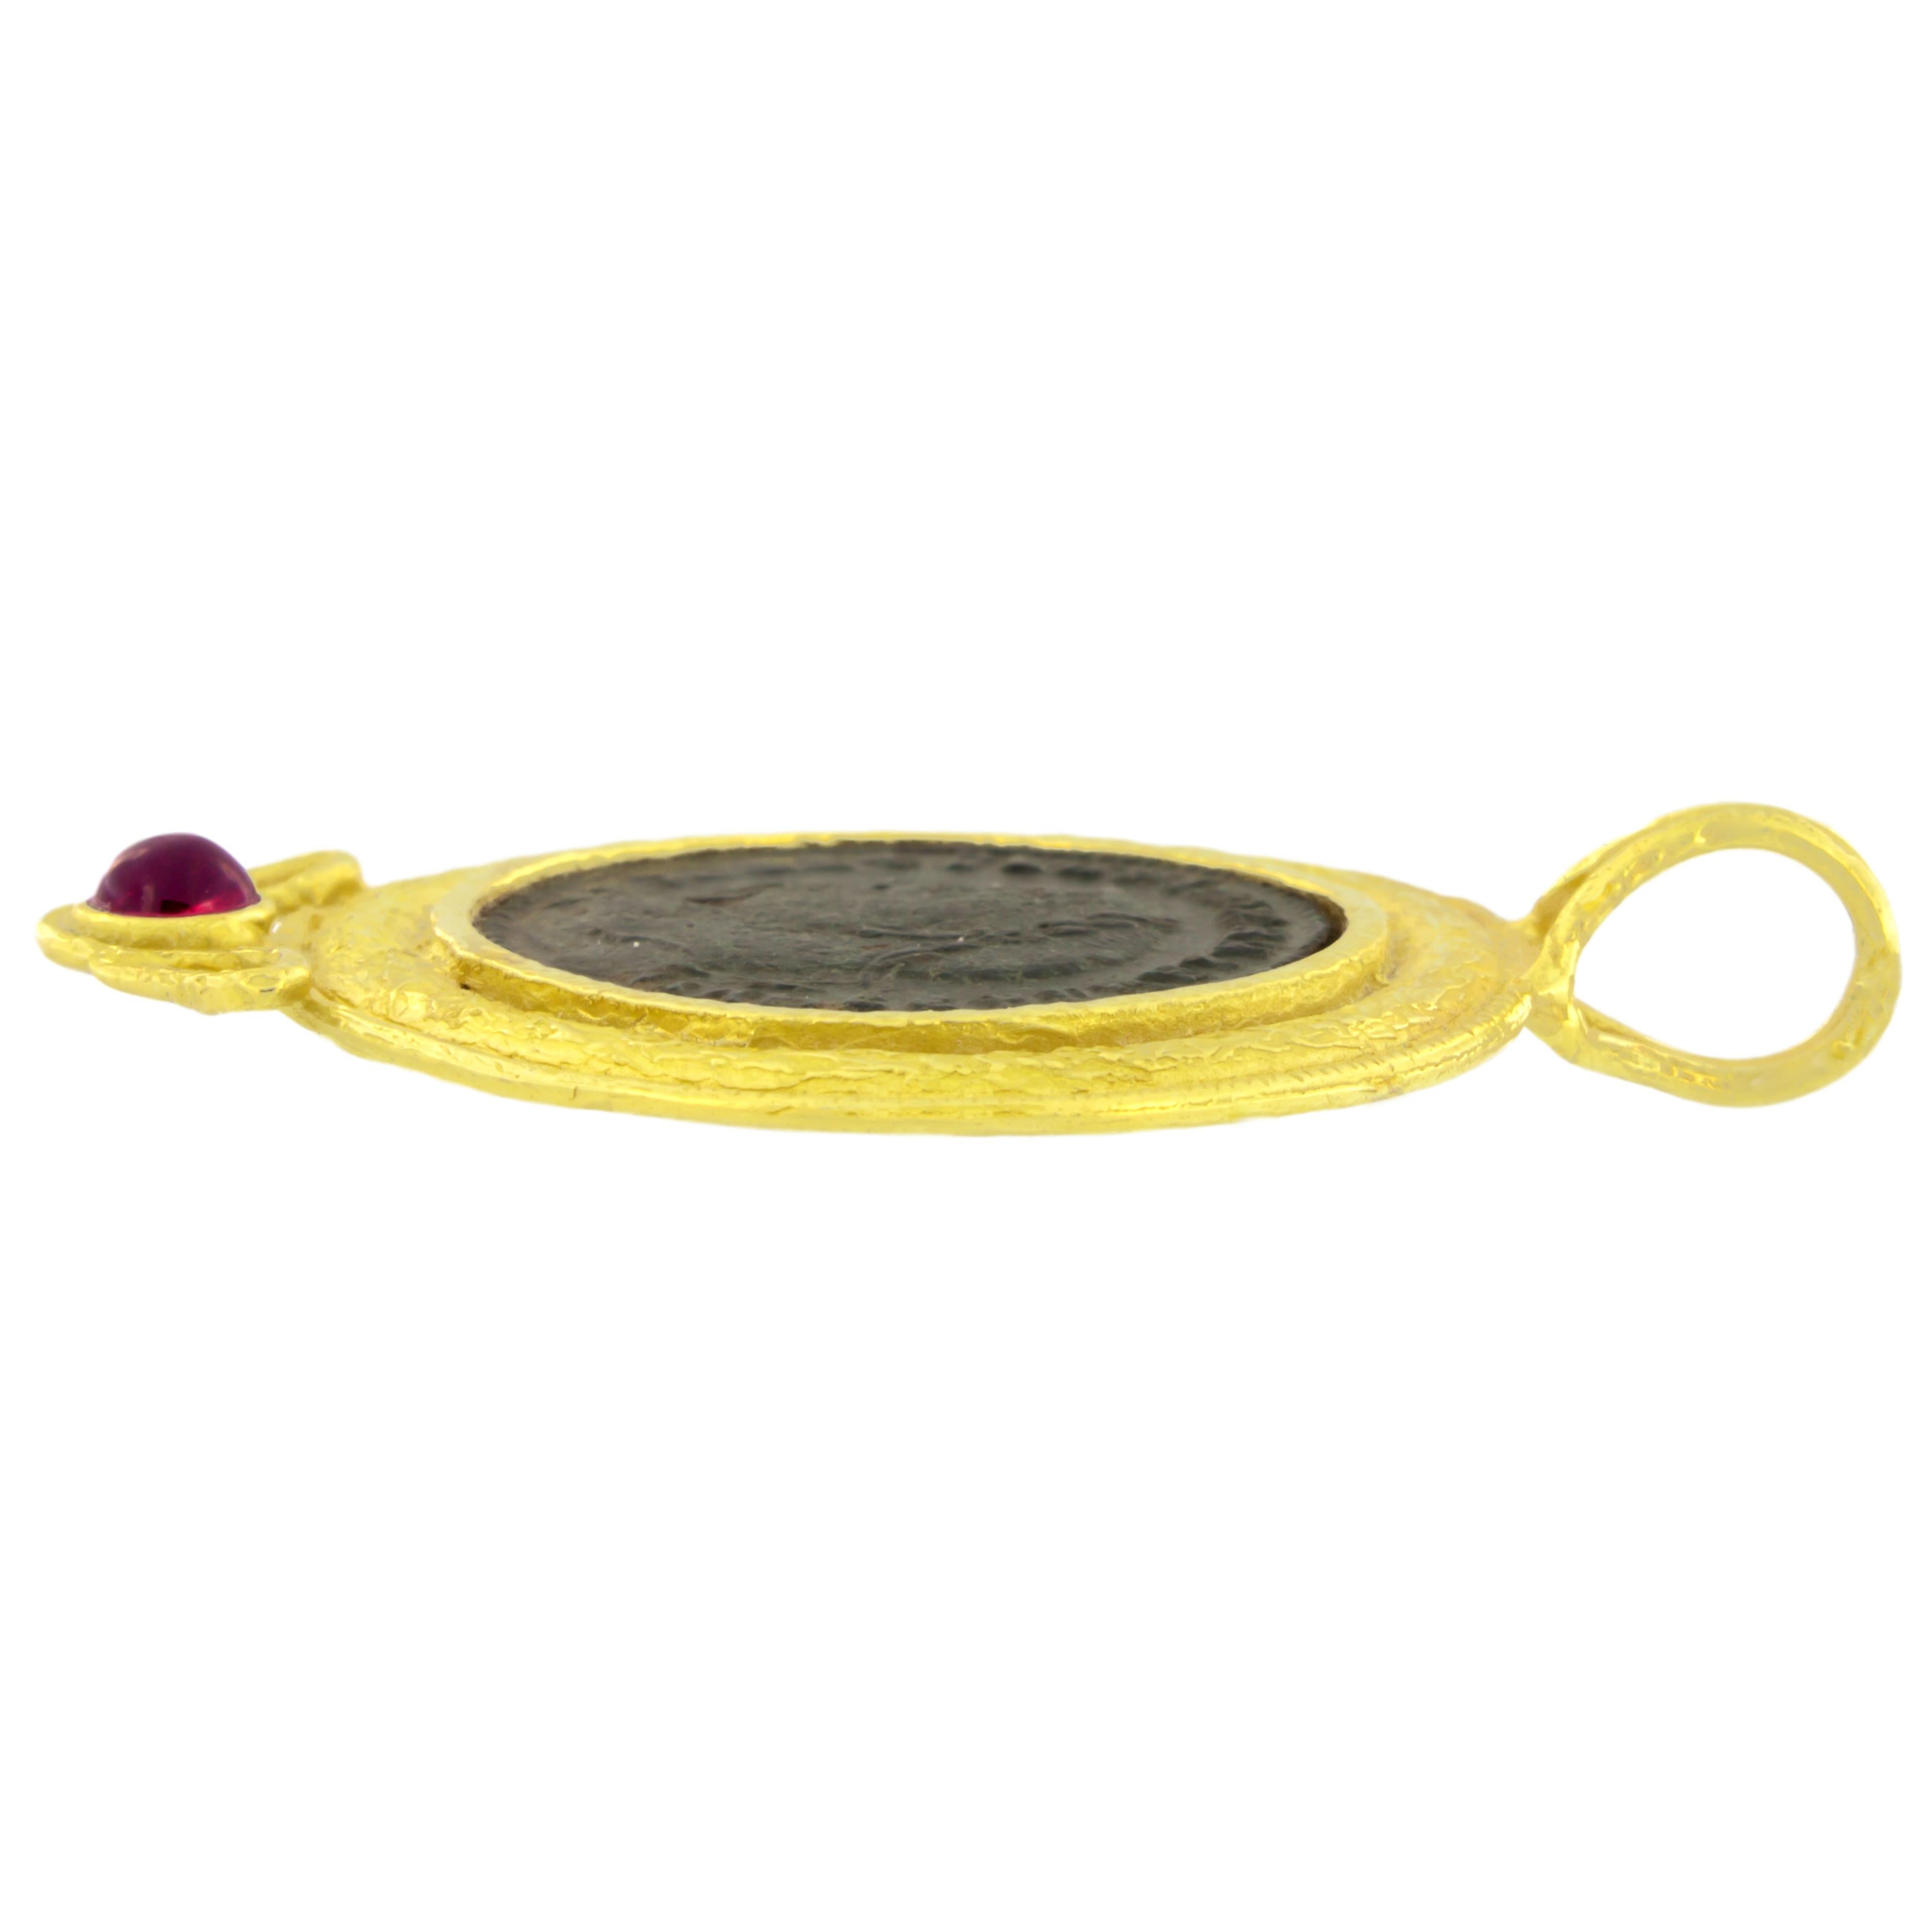 Anhänger aus satiniertem Gelbgold mit antiker römischer Münze und Turmalin, aus der Roma-Kollektion von Sacchi, handgefertigt im Wachsausschmelzverfahren.

Das Wachsausschmelzverfahren, eine der ältesten Techniken zur Herstellung von Schmuck, bildet